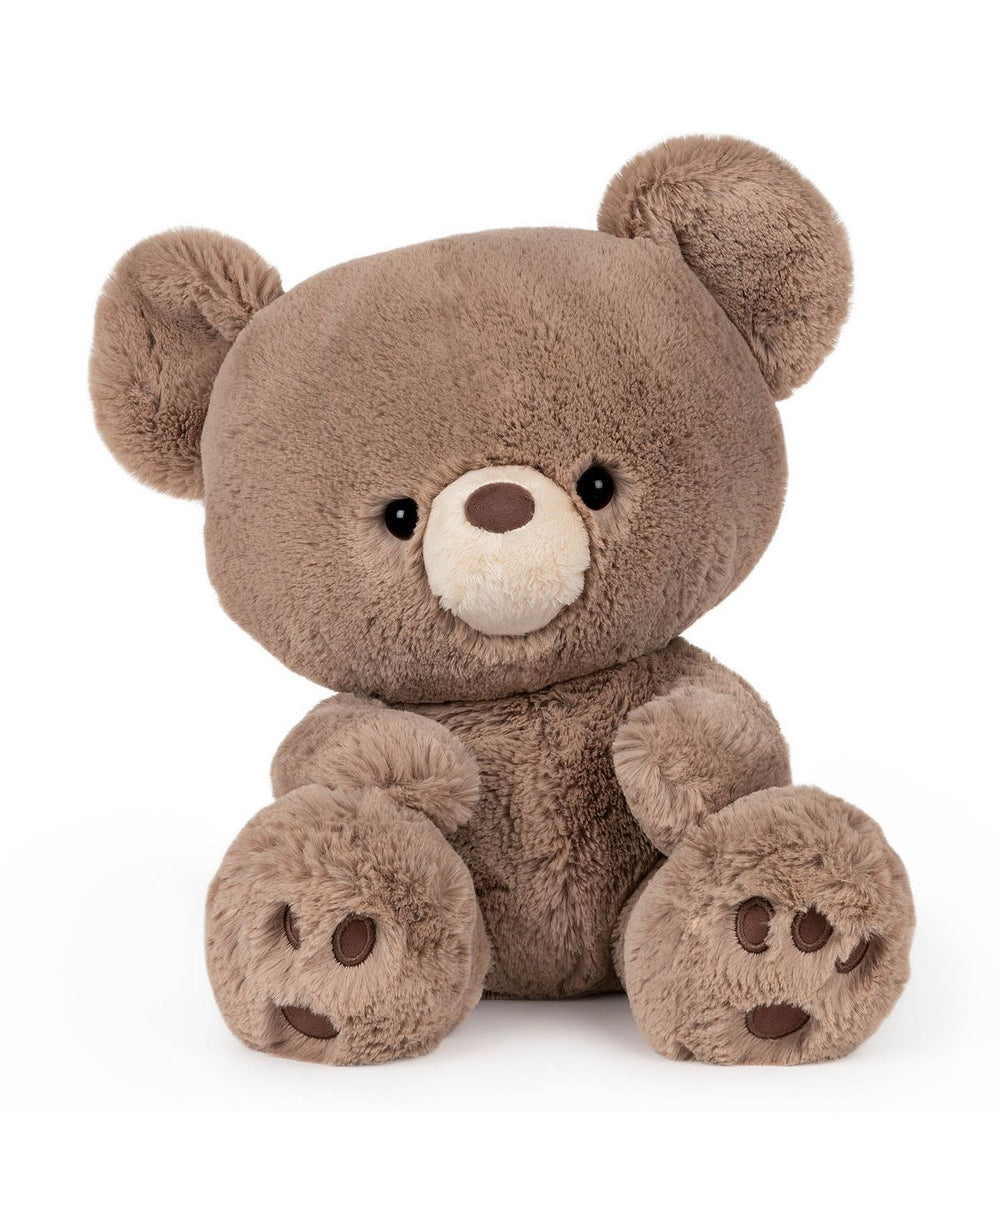 Gund Kai 12 inch Premium Plush Teddy Bear - Soft Cuddly Stuffed Animal